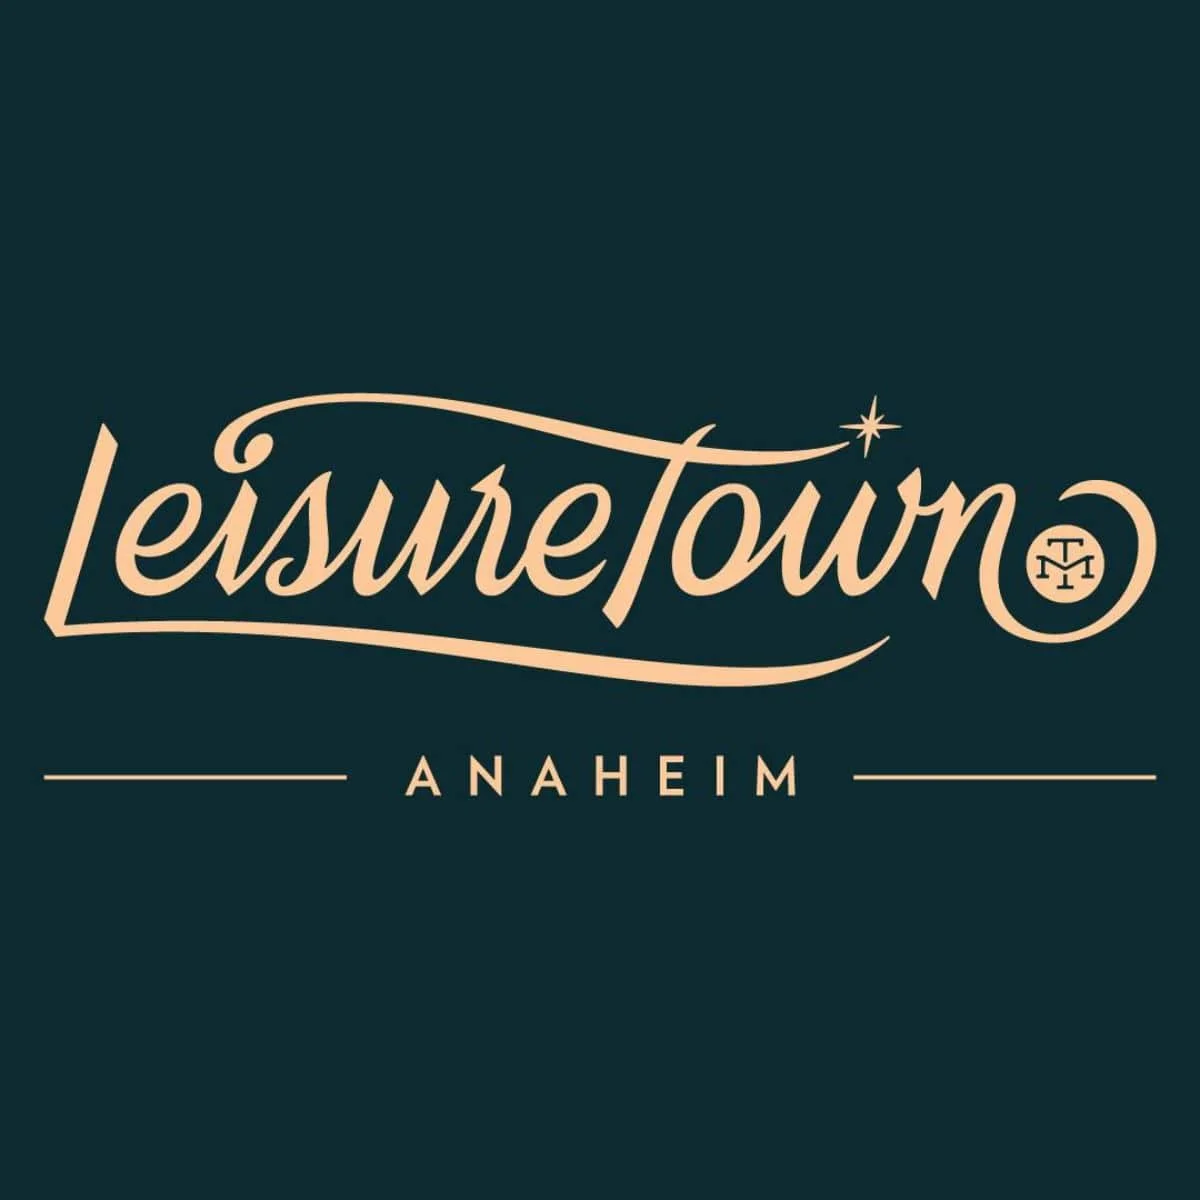 Modern Times Leisuretown Anaheim